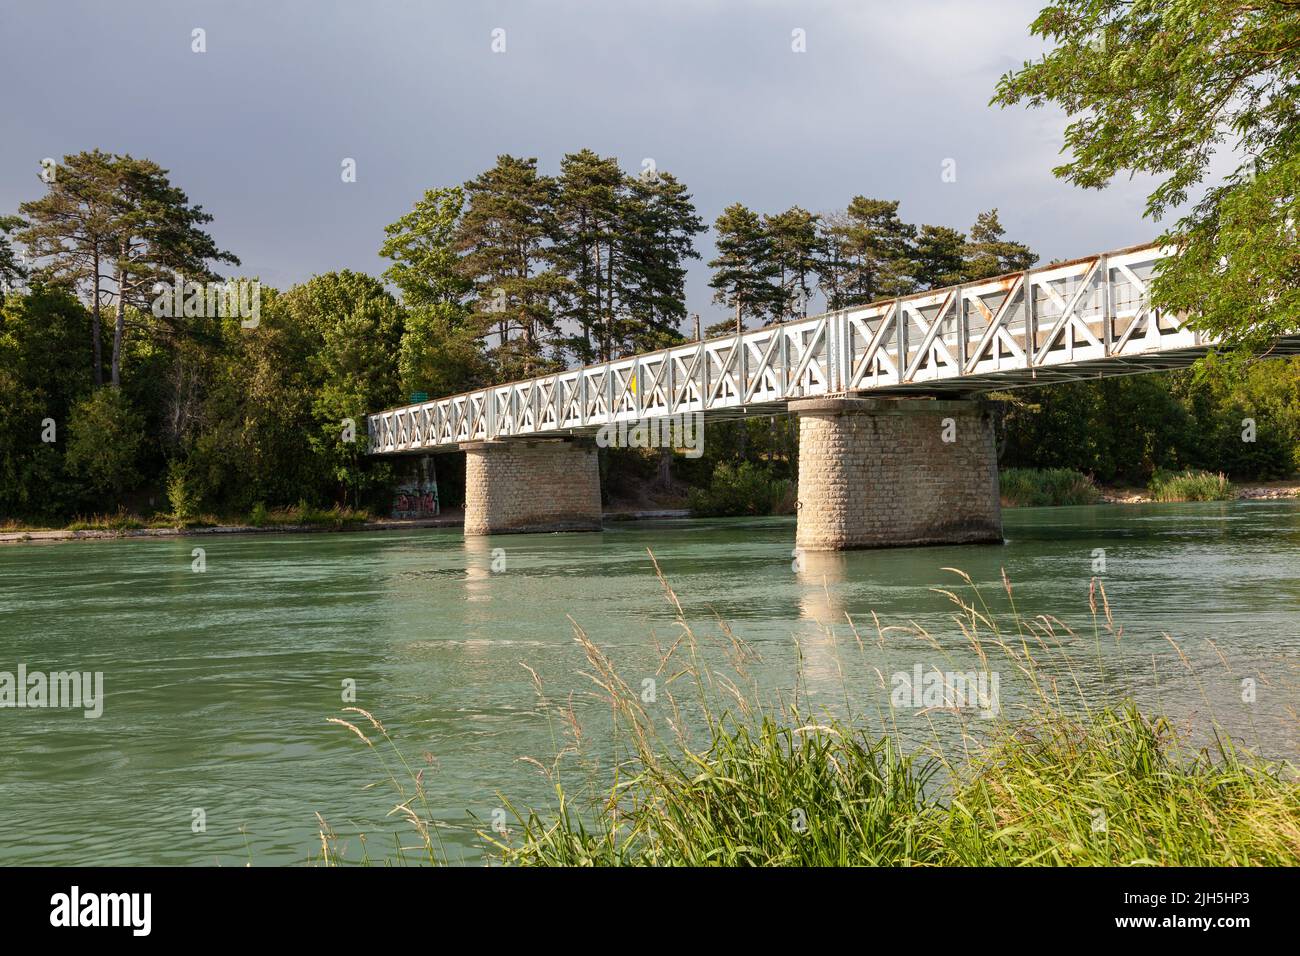 Pont d'Herbens, bridge in Meyzieu, Grand Parc de Miribel-Jonage, France Stock Photo